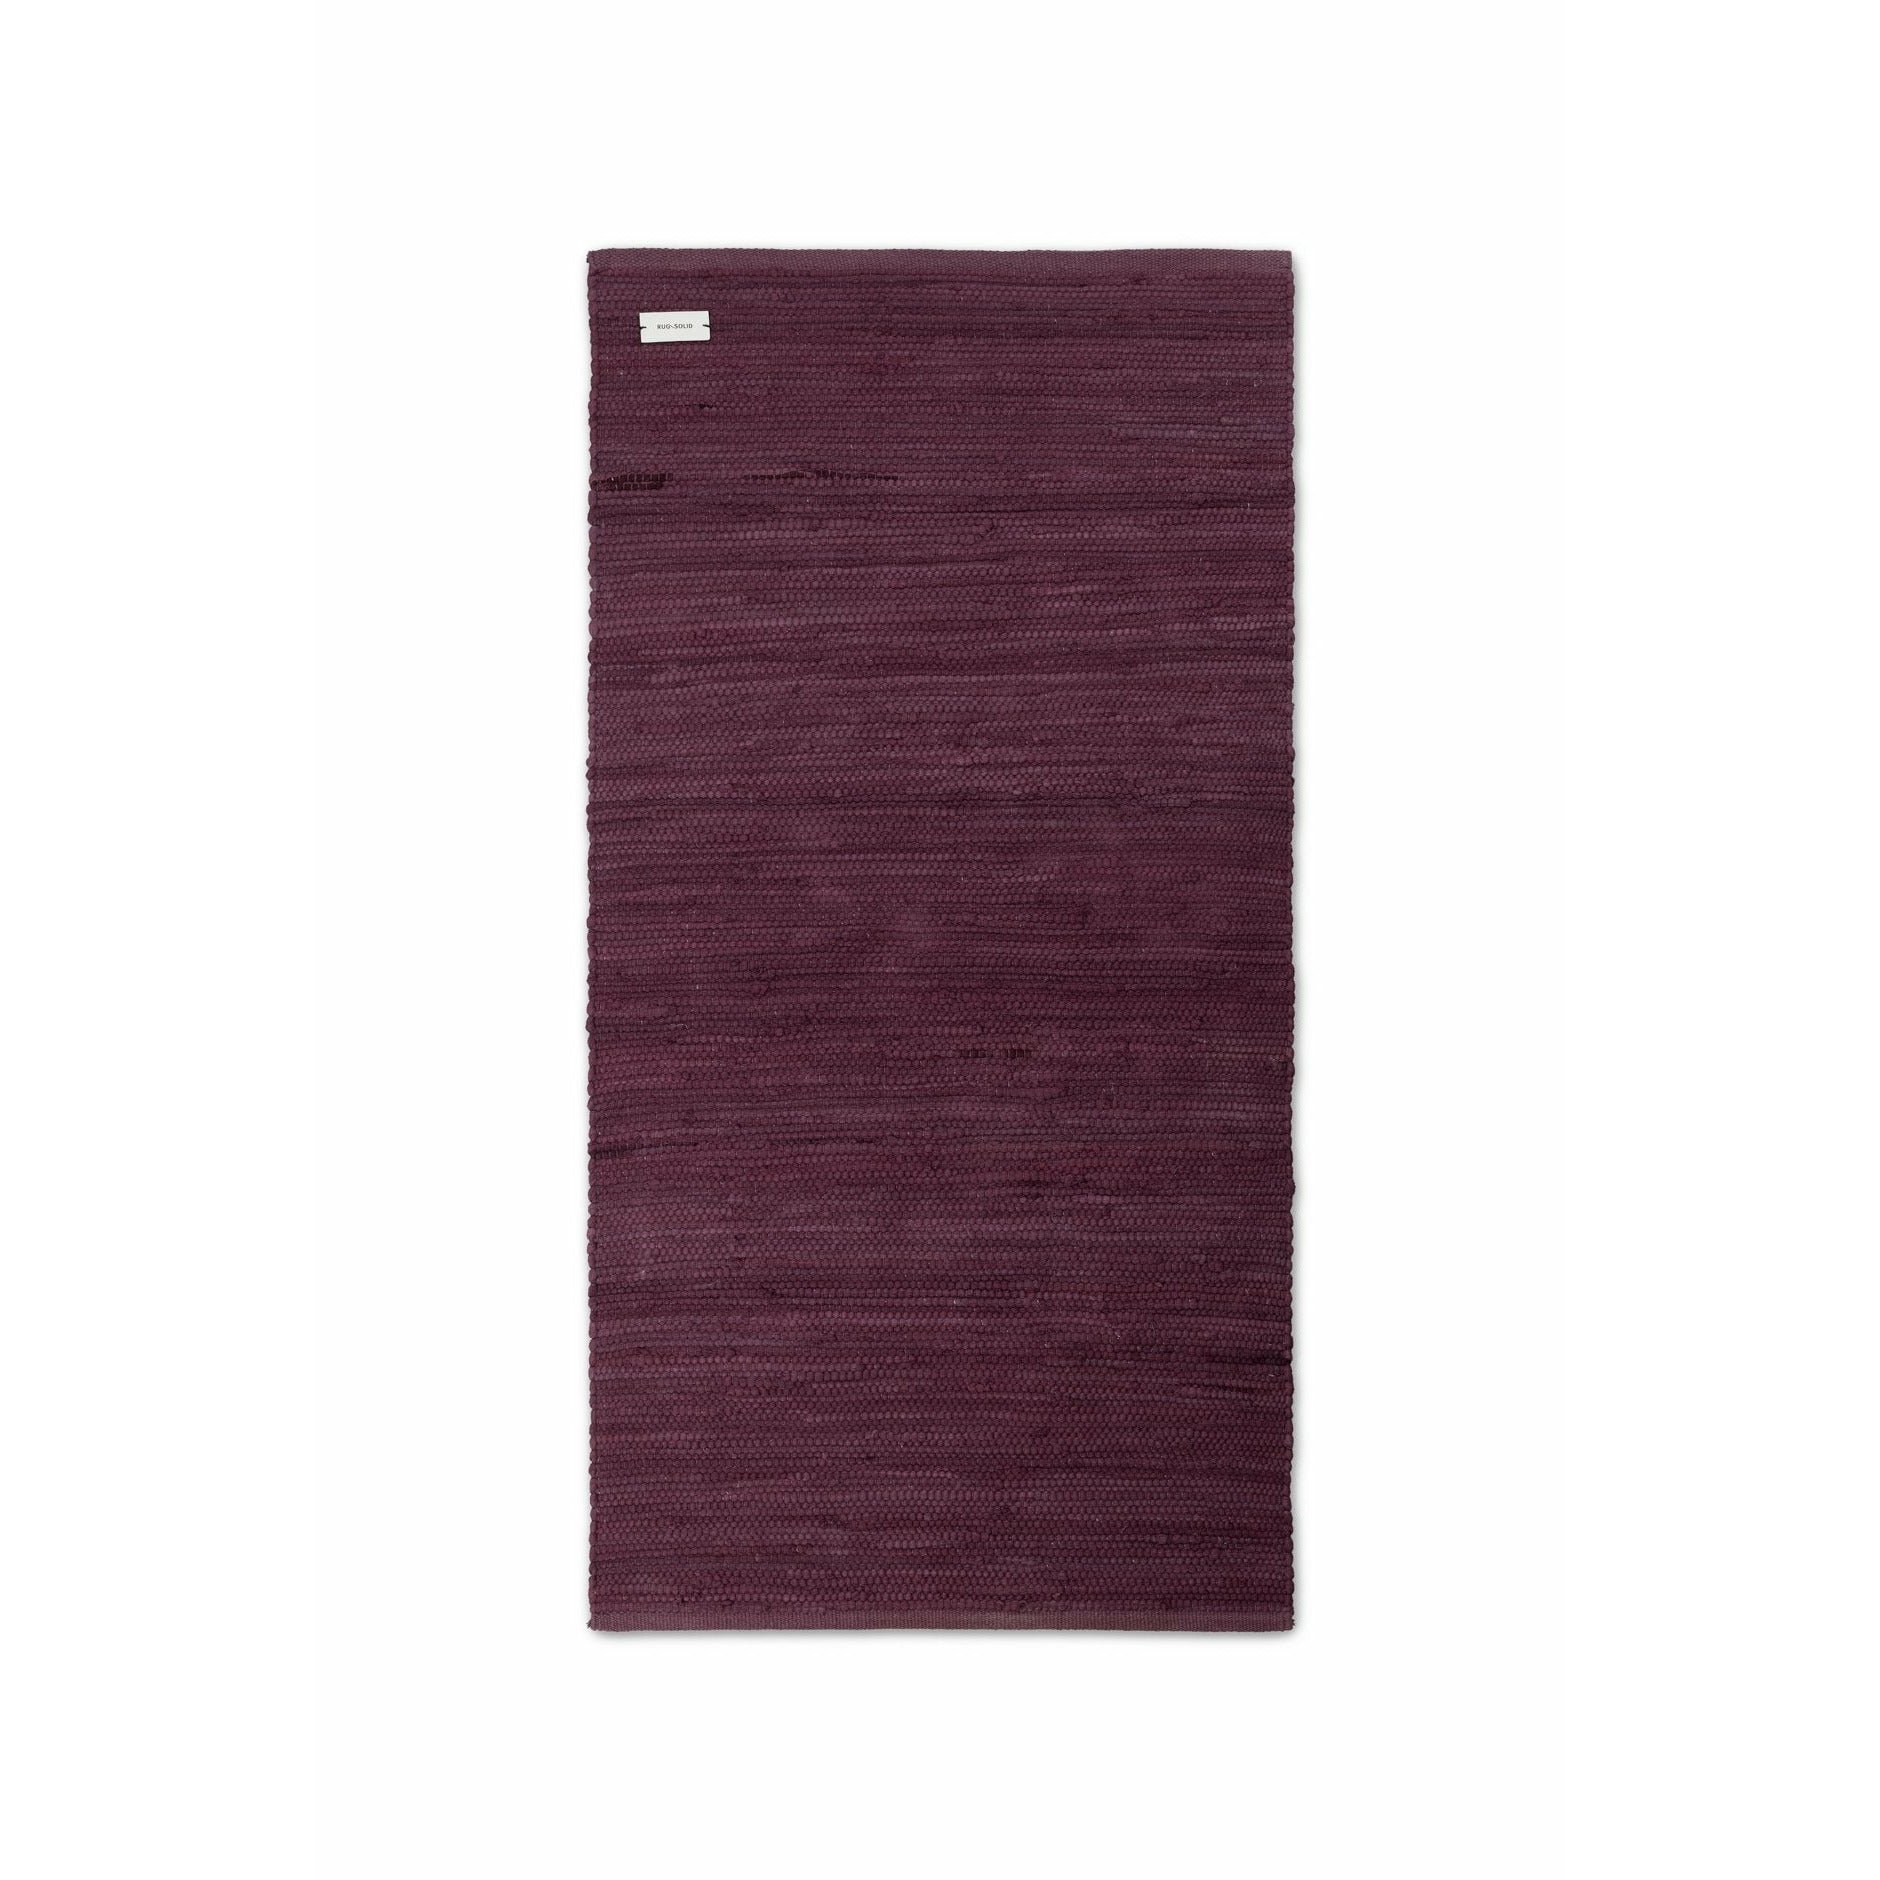 Koberec pevné bavlněné koberec Bold Raspberry, 170 x 240 cm